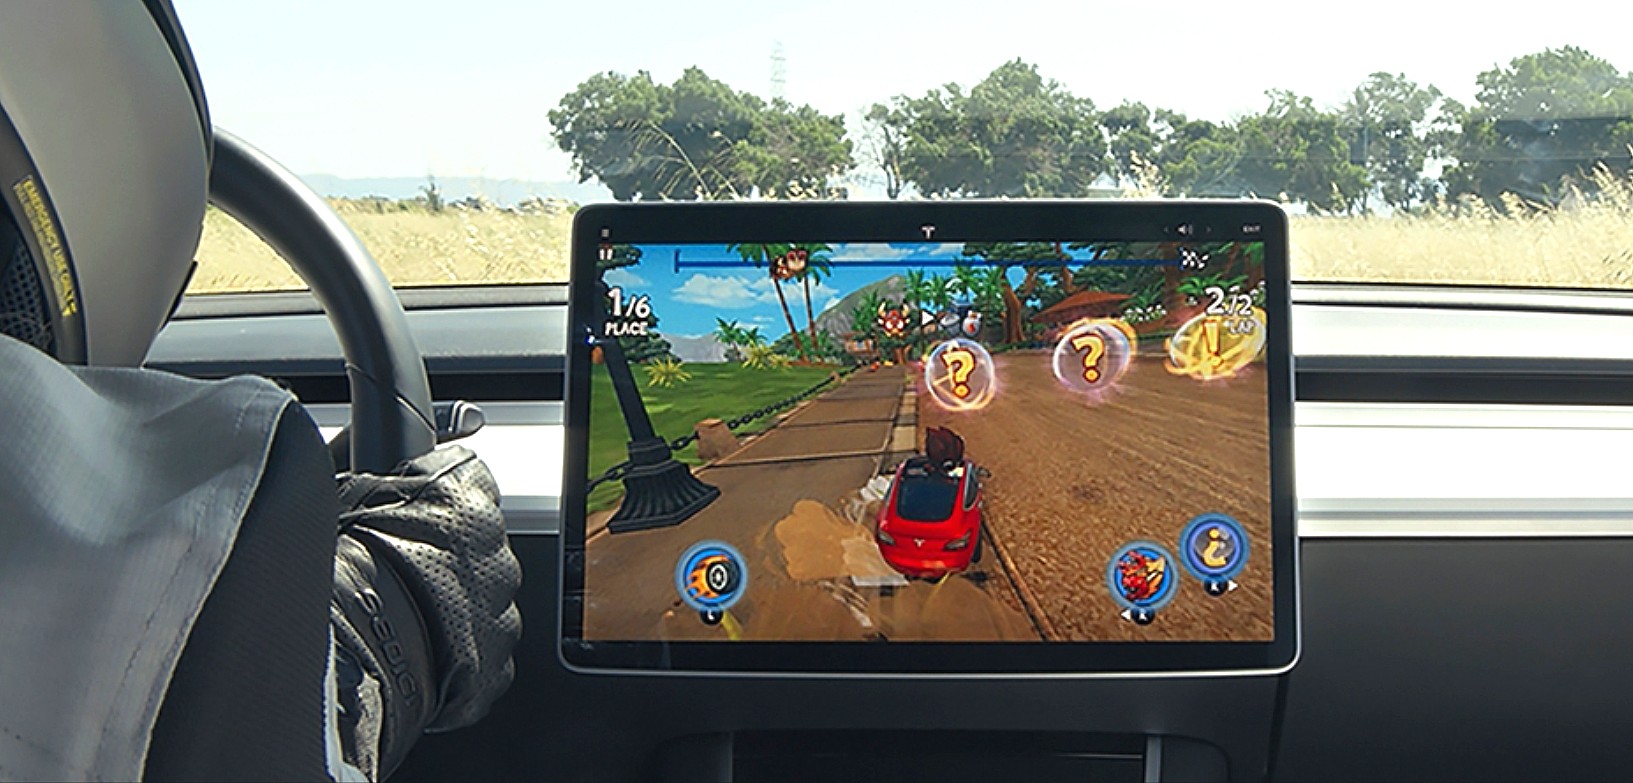 Tesla подтвердила NHTSA, что остановит игровые автоматы в автомобиле, пока автомобиль находится в движении